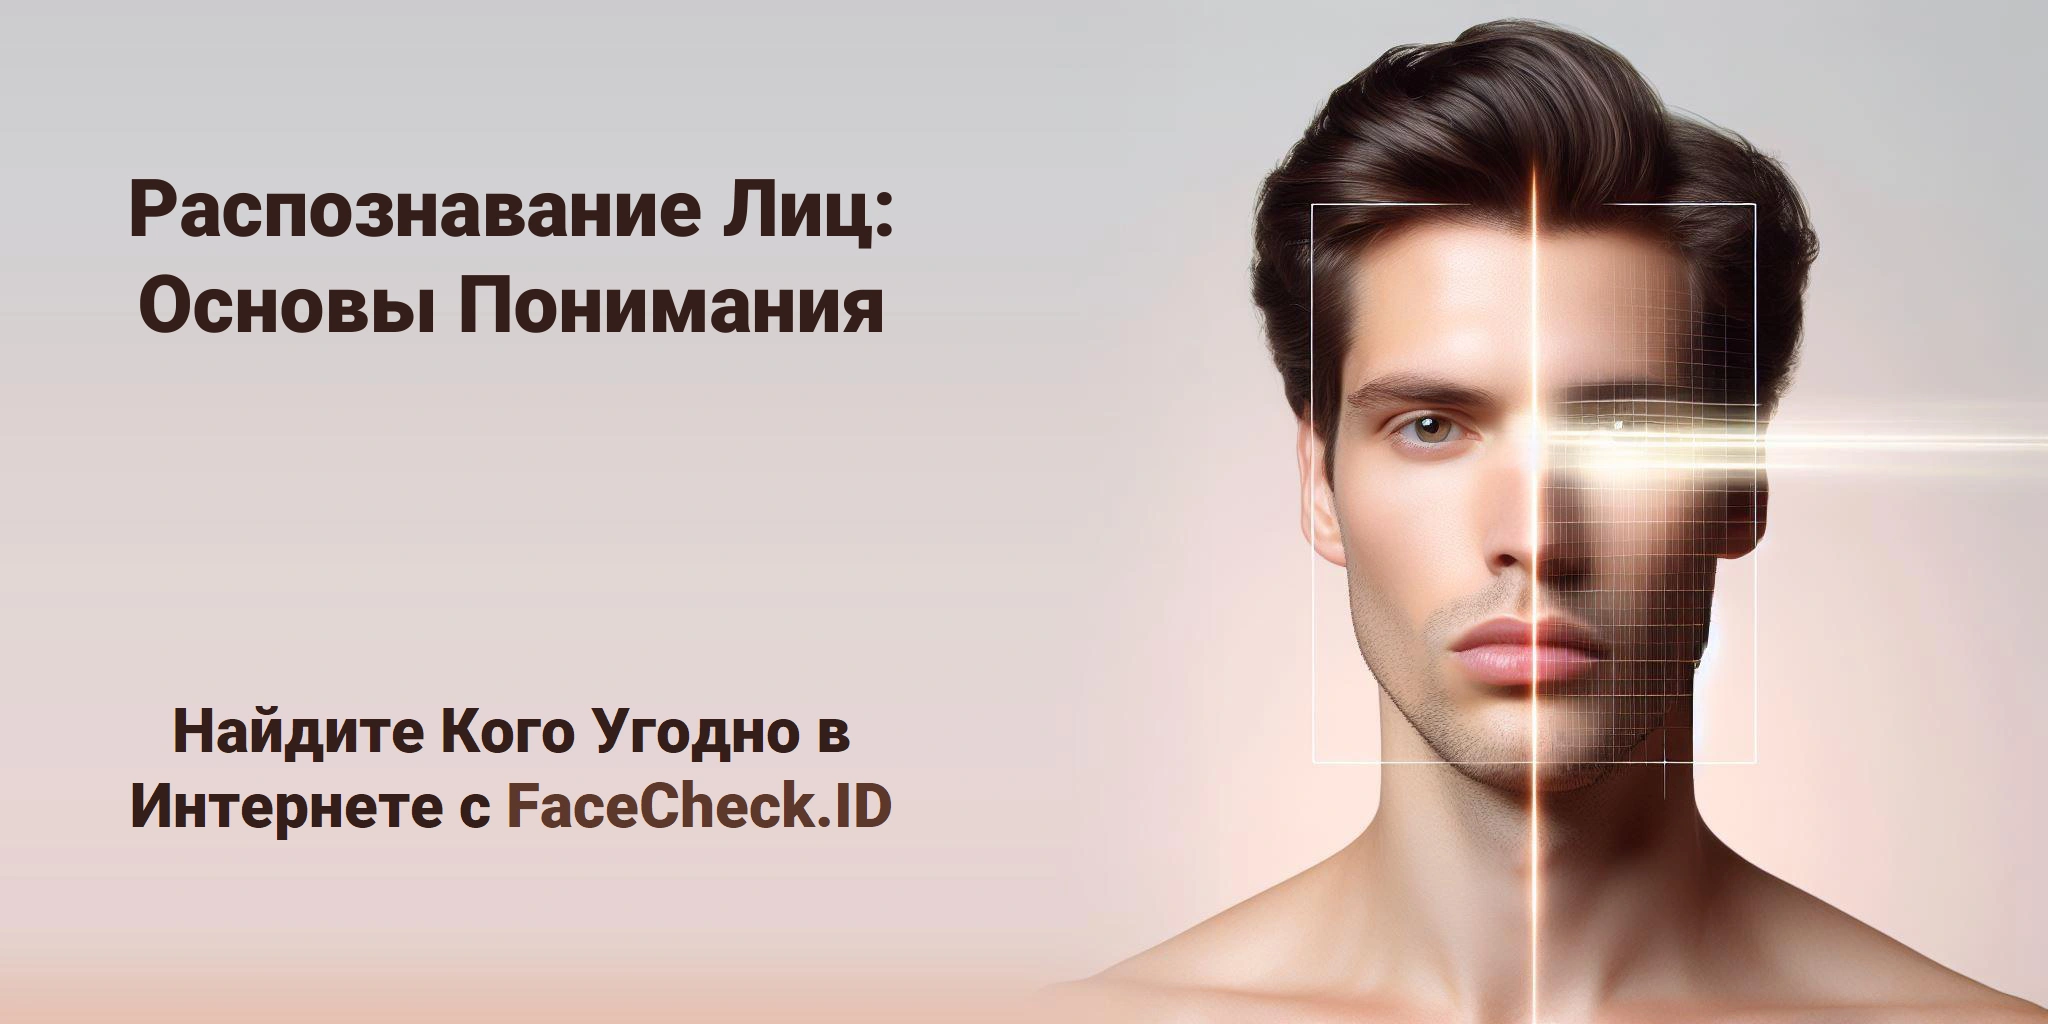 Распознавание Лиц: Основы Понимания Найдите Кого Угодно в Интернете с FaceCheck.ID